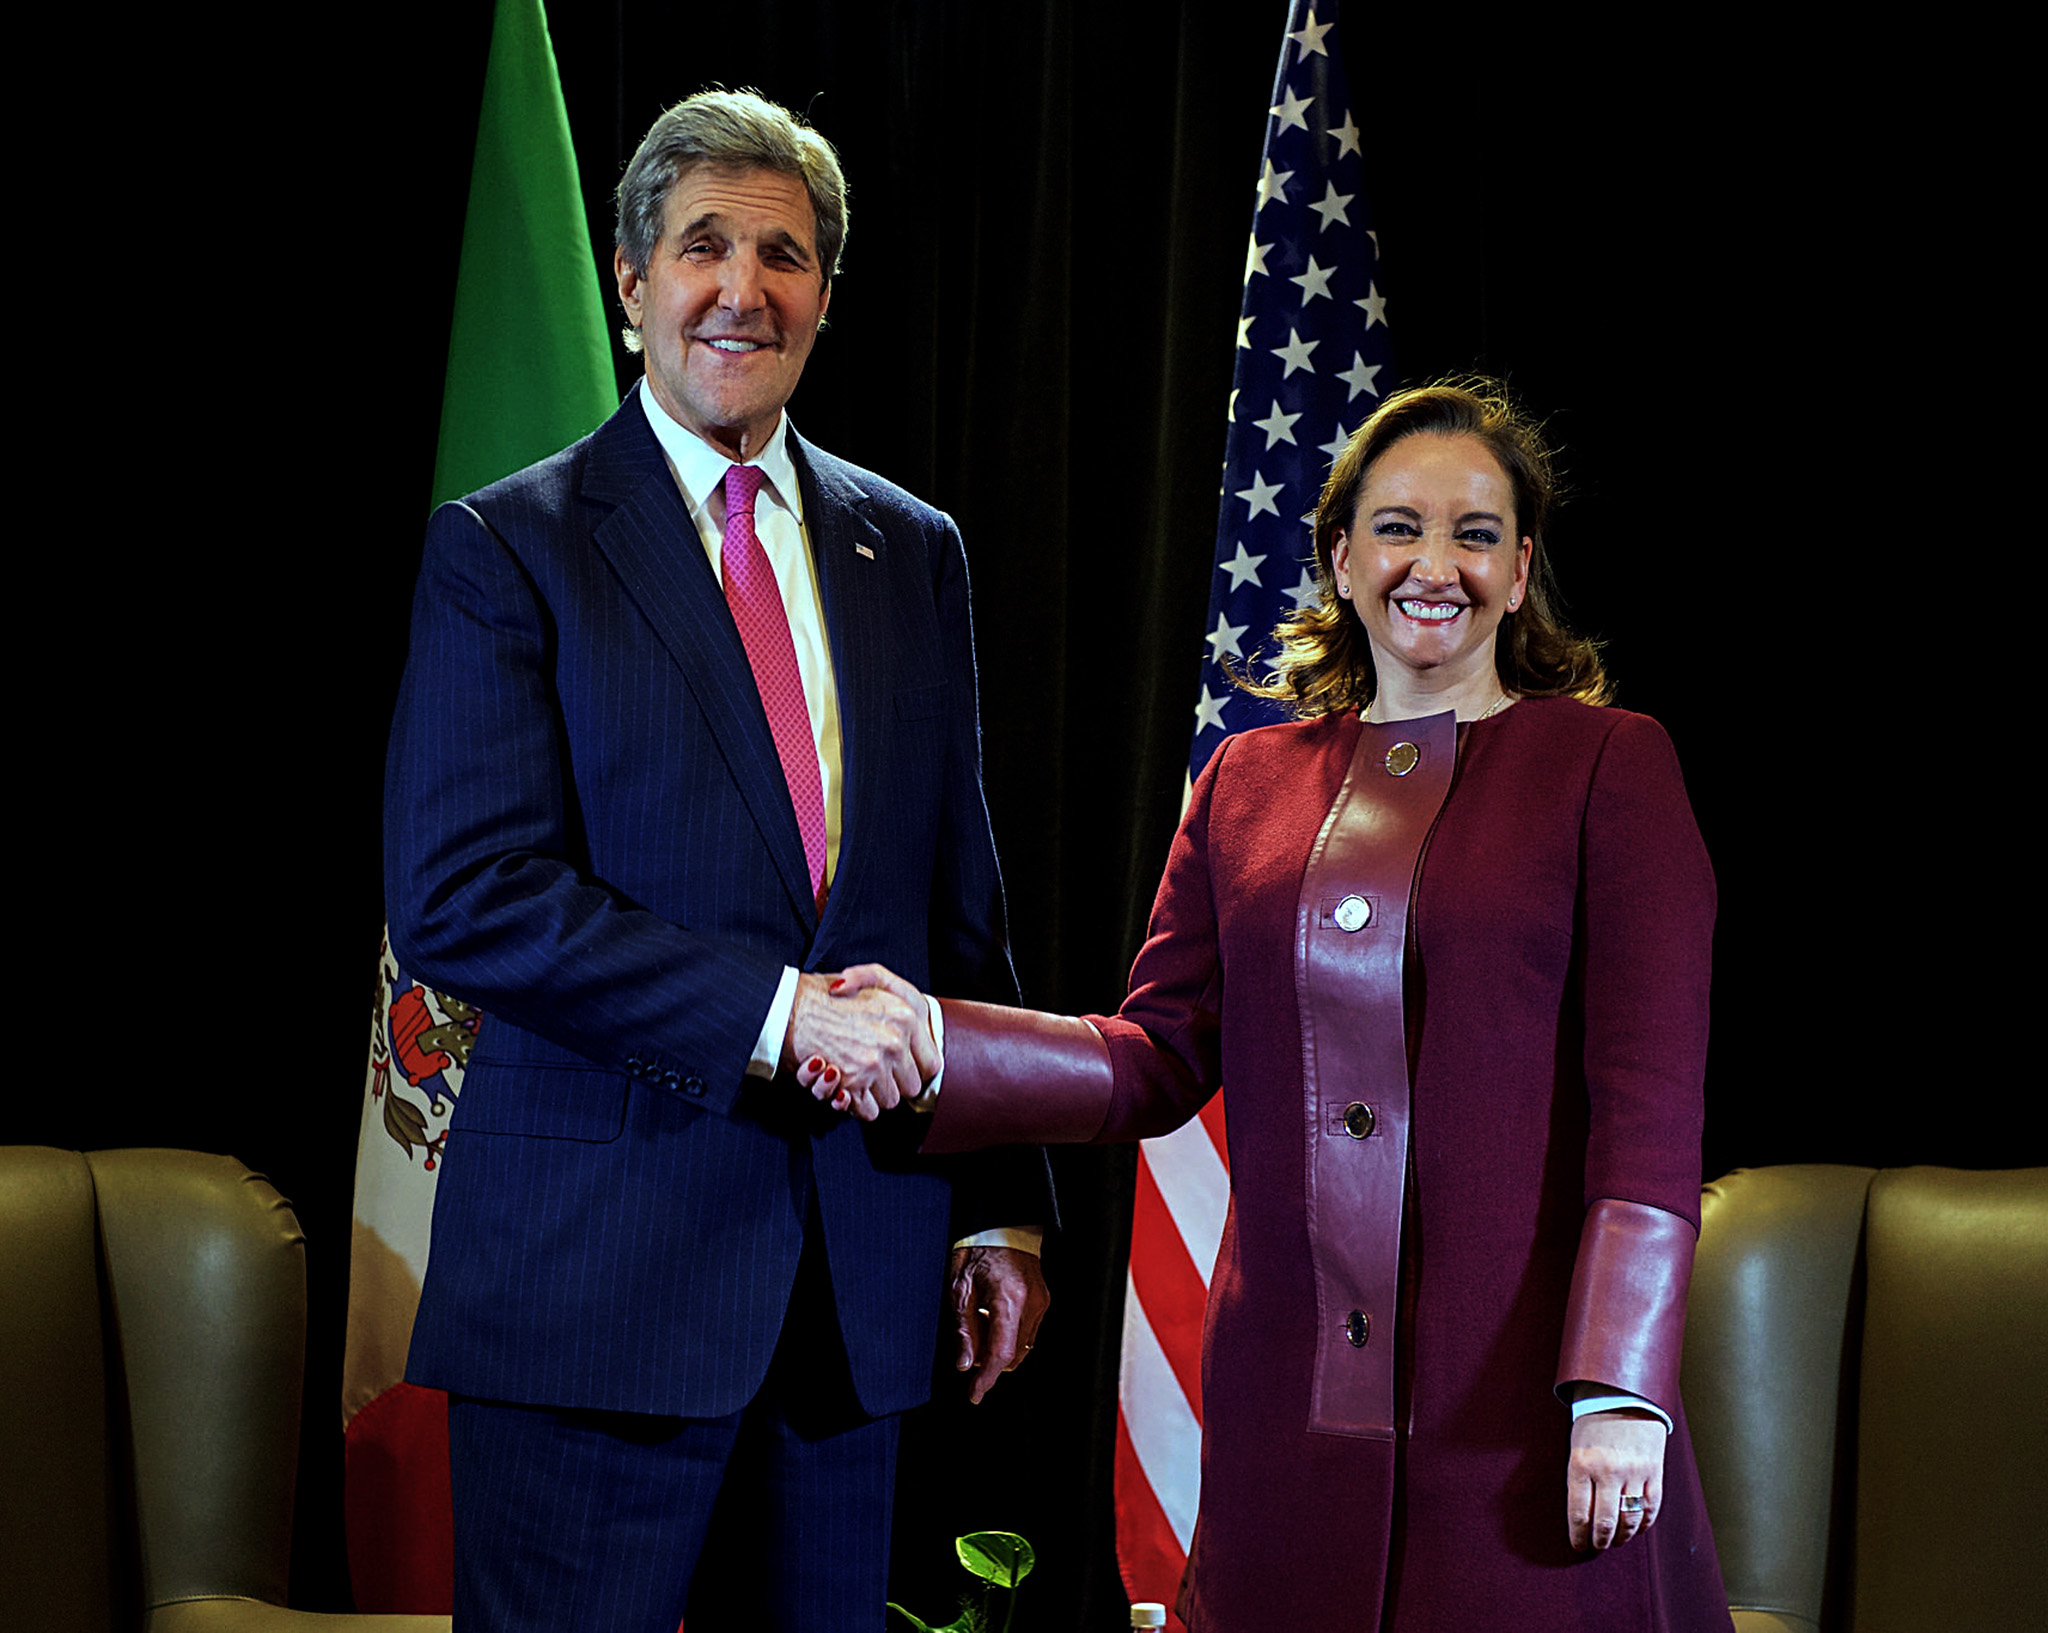 FOTO 1 Canciller Claudia Ruiz Massieu con el Secretario de Estado de Estados Unidos  John Kerry  Foto Departamento de Estado de EU .jpg